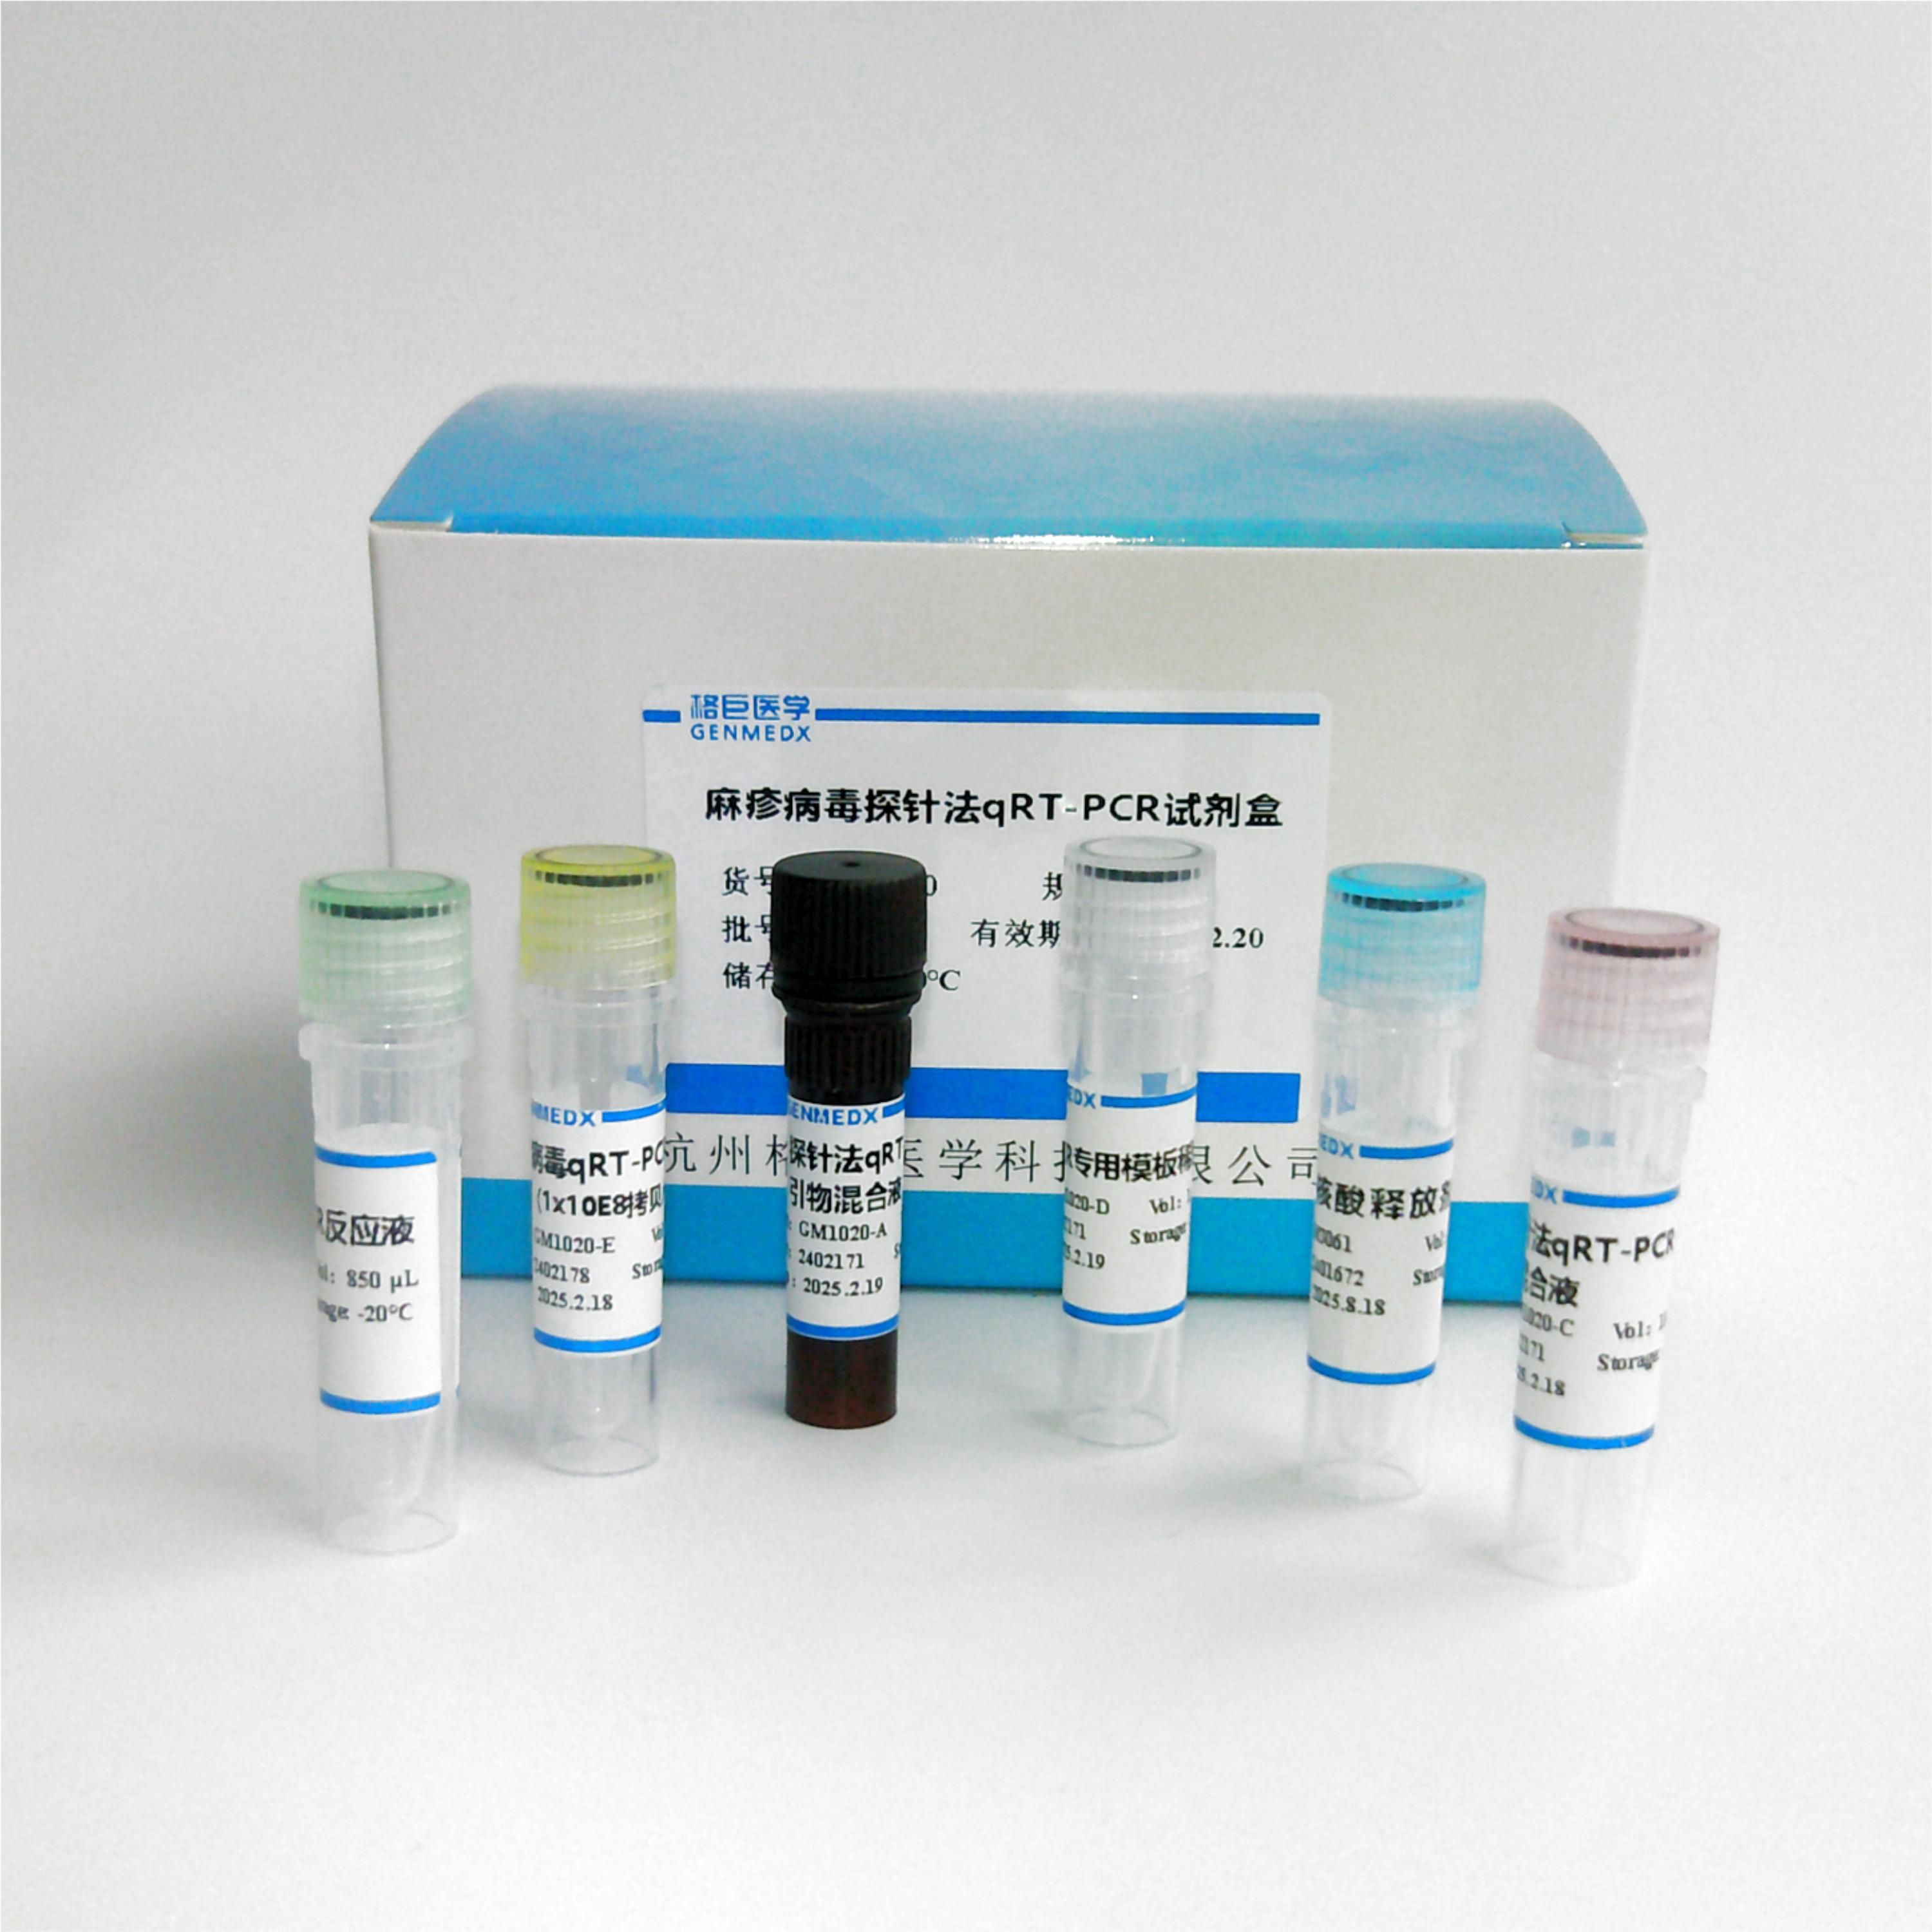 肠道腺病毒探针法荧光定量PCR试剂盒